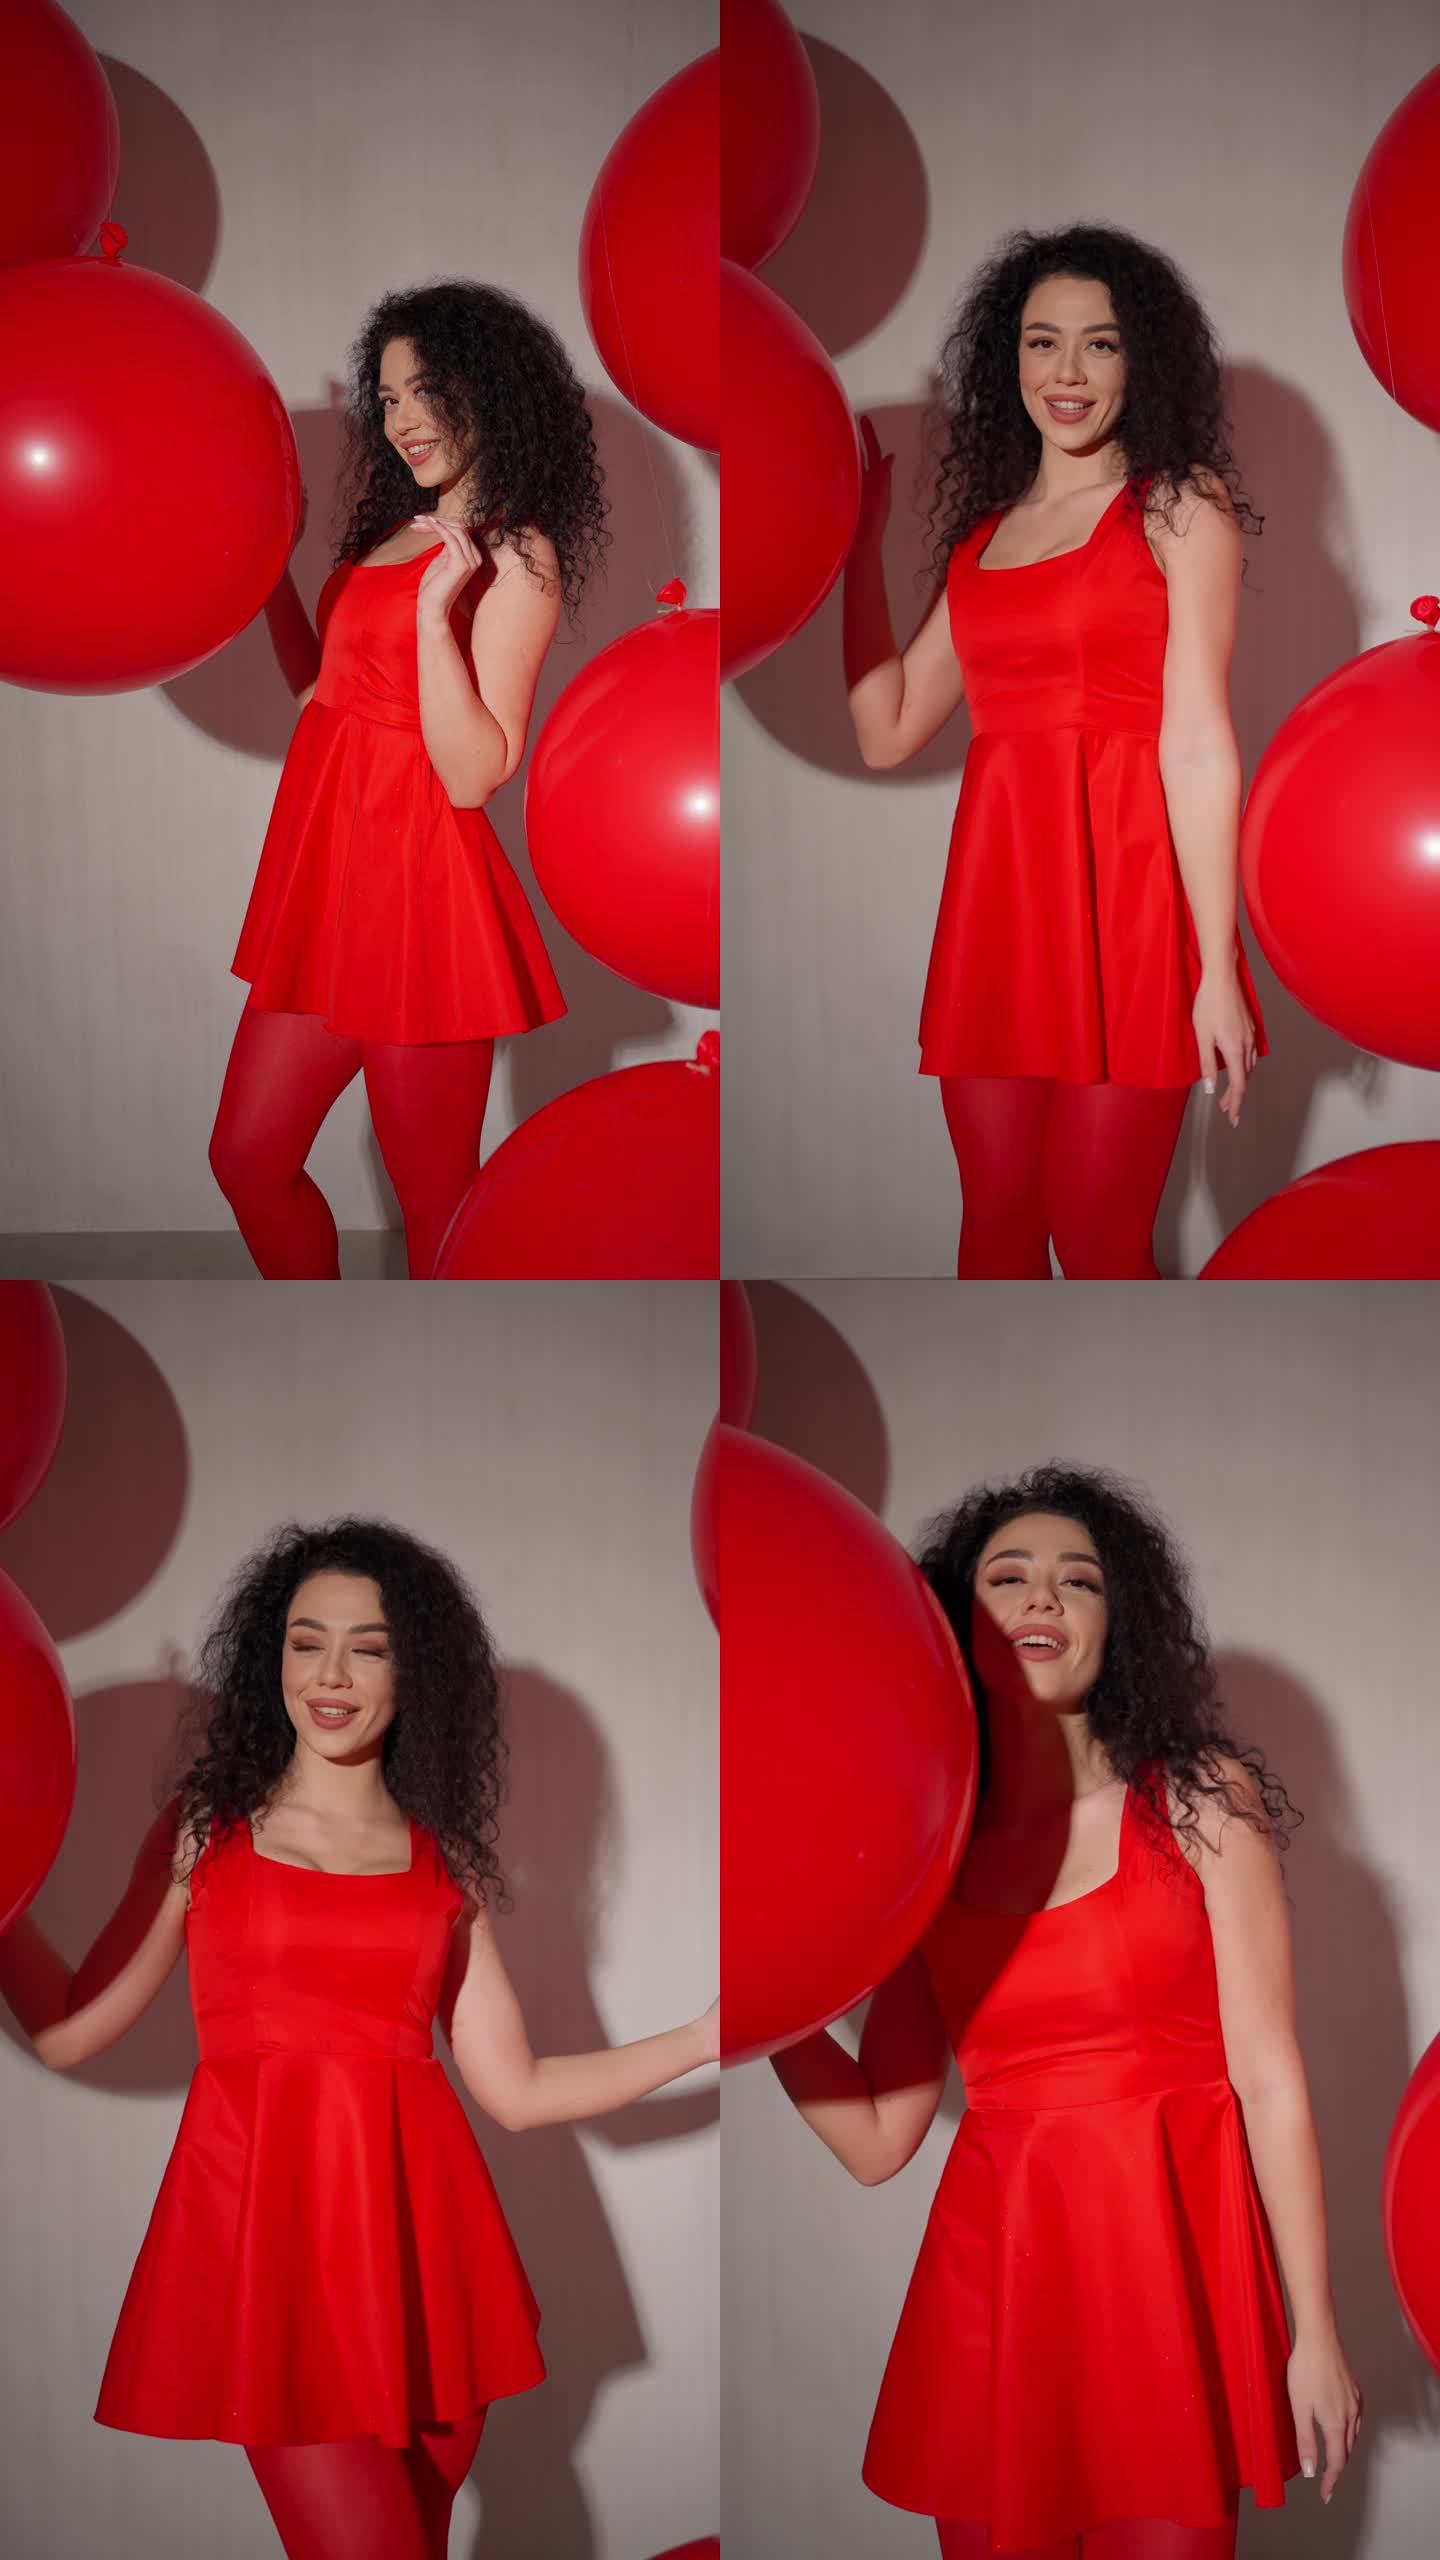 穿红衣服拿气球的女士。一头卷发，身穿红色连衣裙和紧身衣的女子拿着超大气球摆姿势。